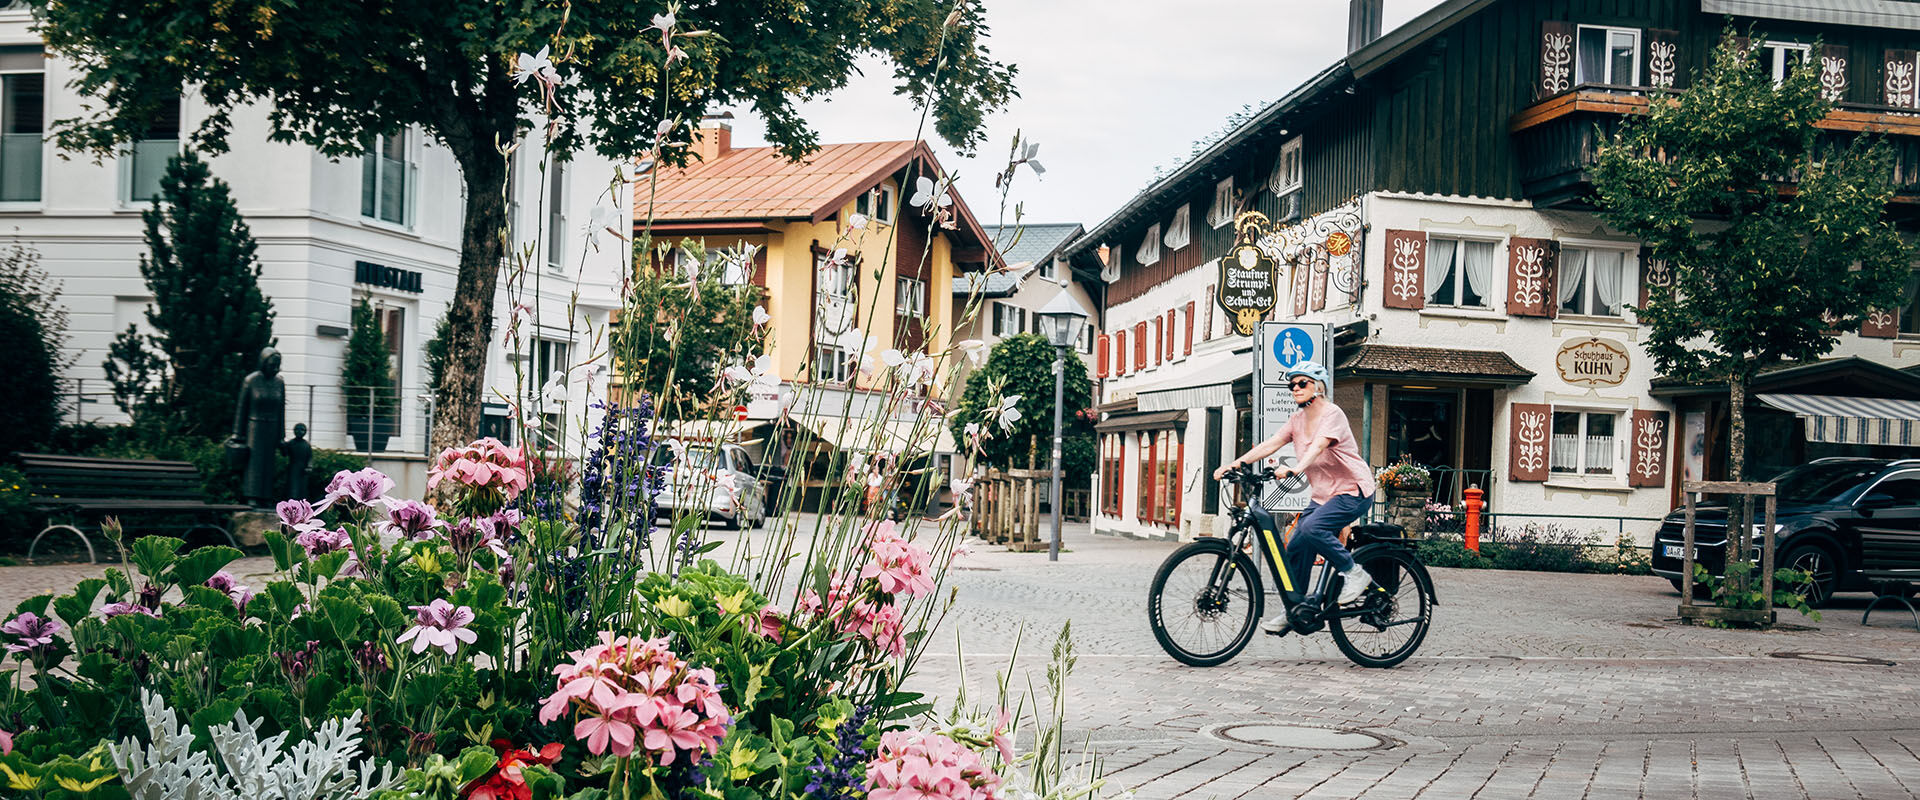 Al fietsend tot rust komen in Oberstaufen, westelijke Allgäu